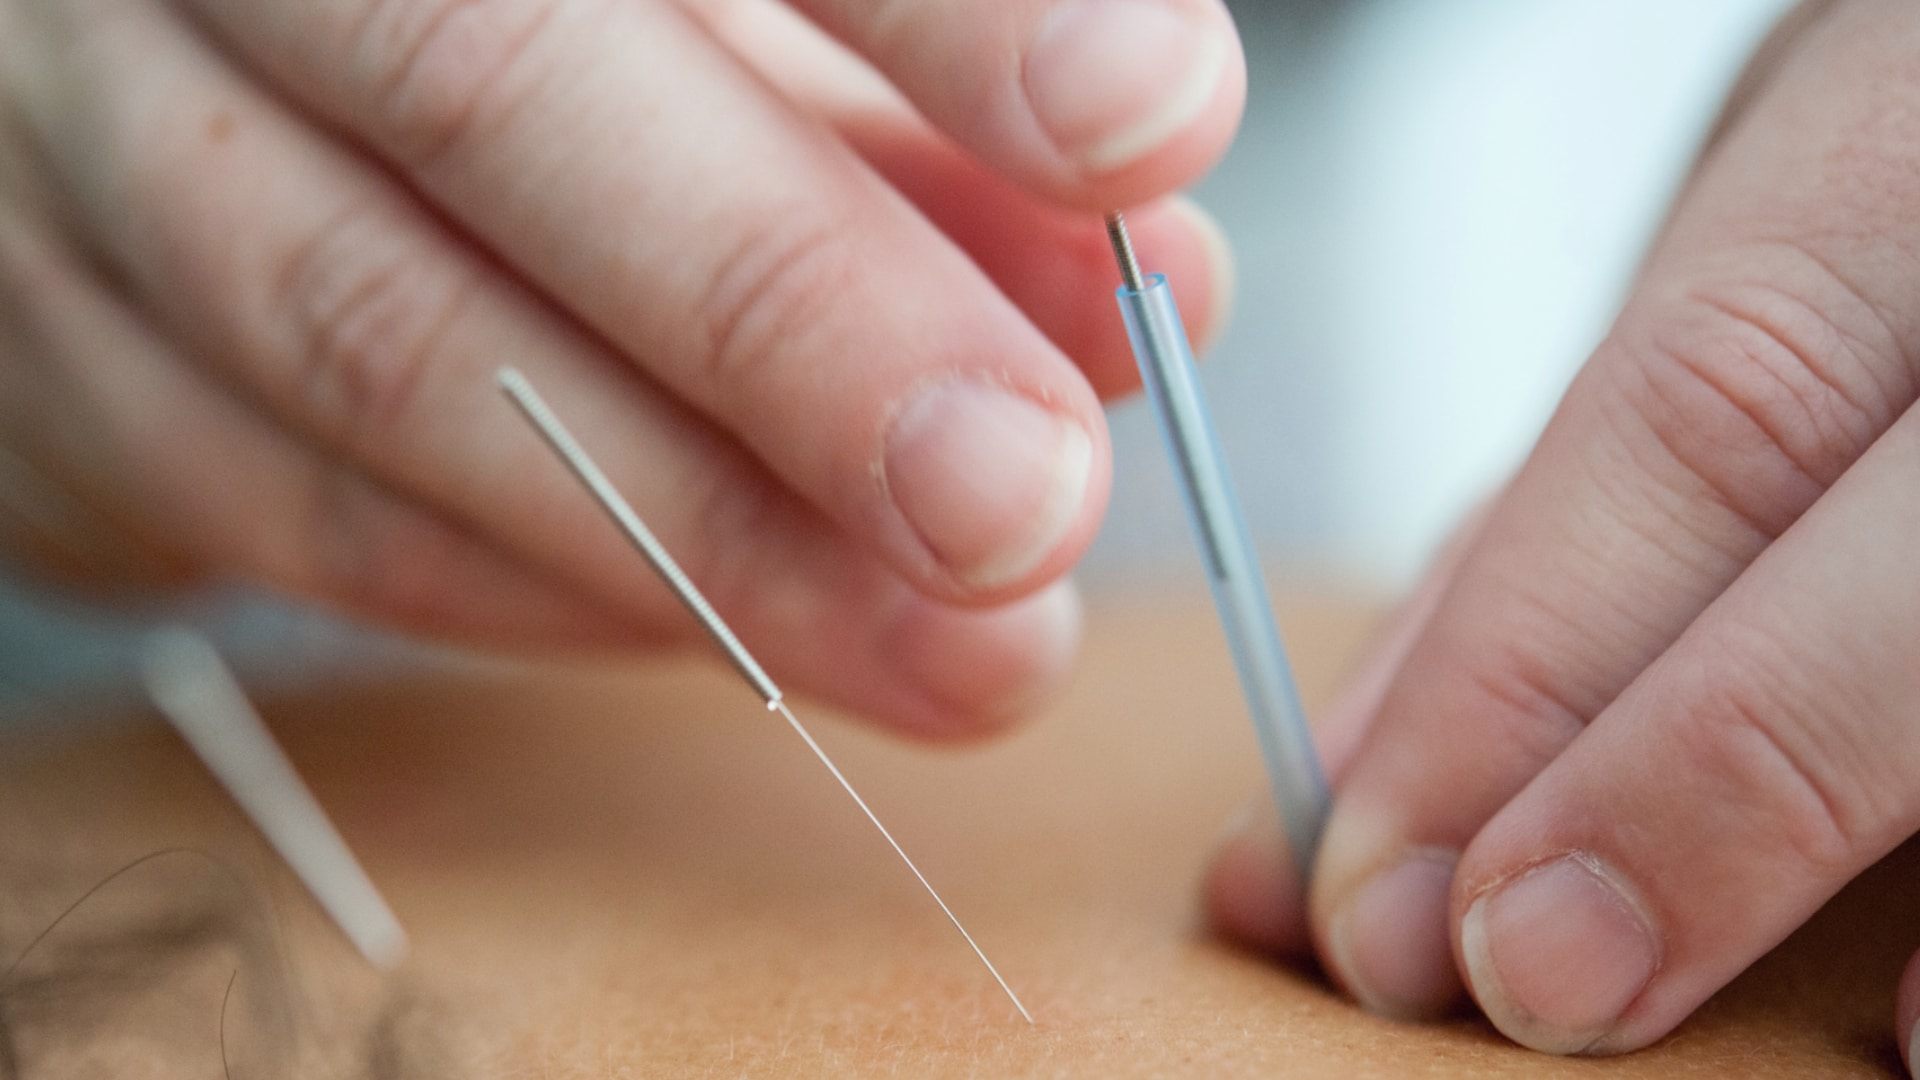 Piaget abre inscrições para Curso para Acupunctores